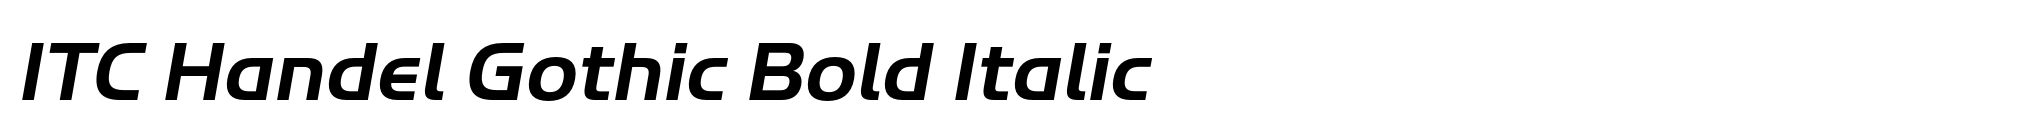 ITC Handel Gothic Bold Italic image